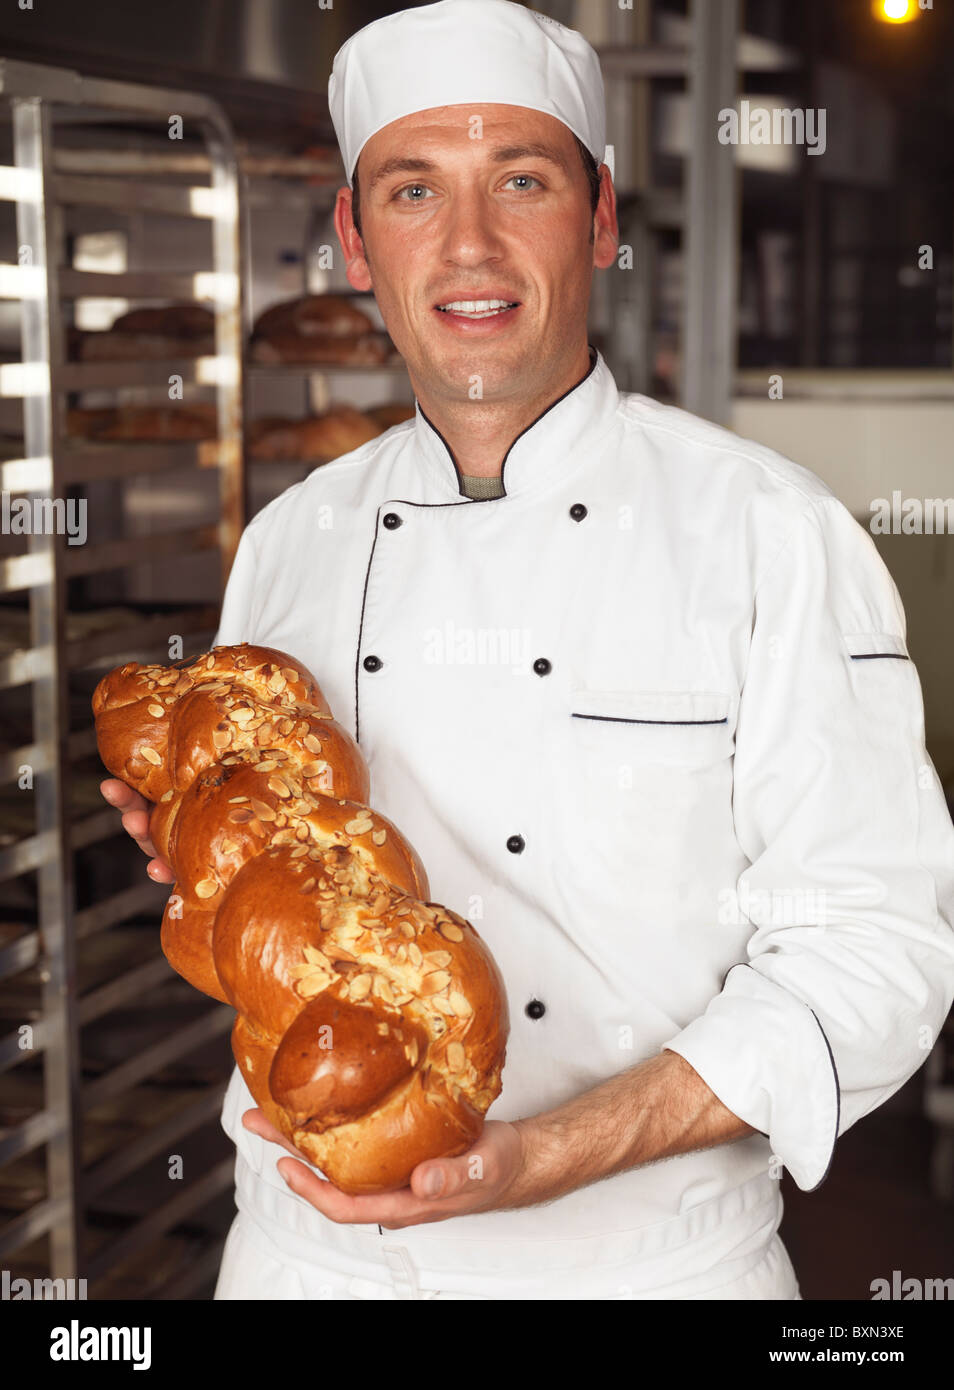 Smiling Baker un pain fraîchement cuit de pain challah dans ses mains Banque D'Images